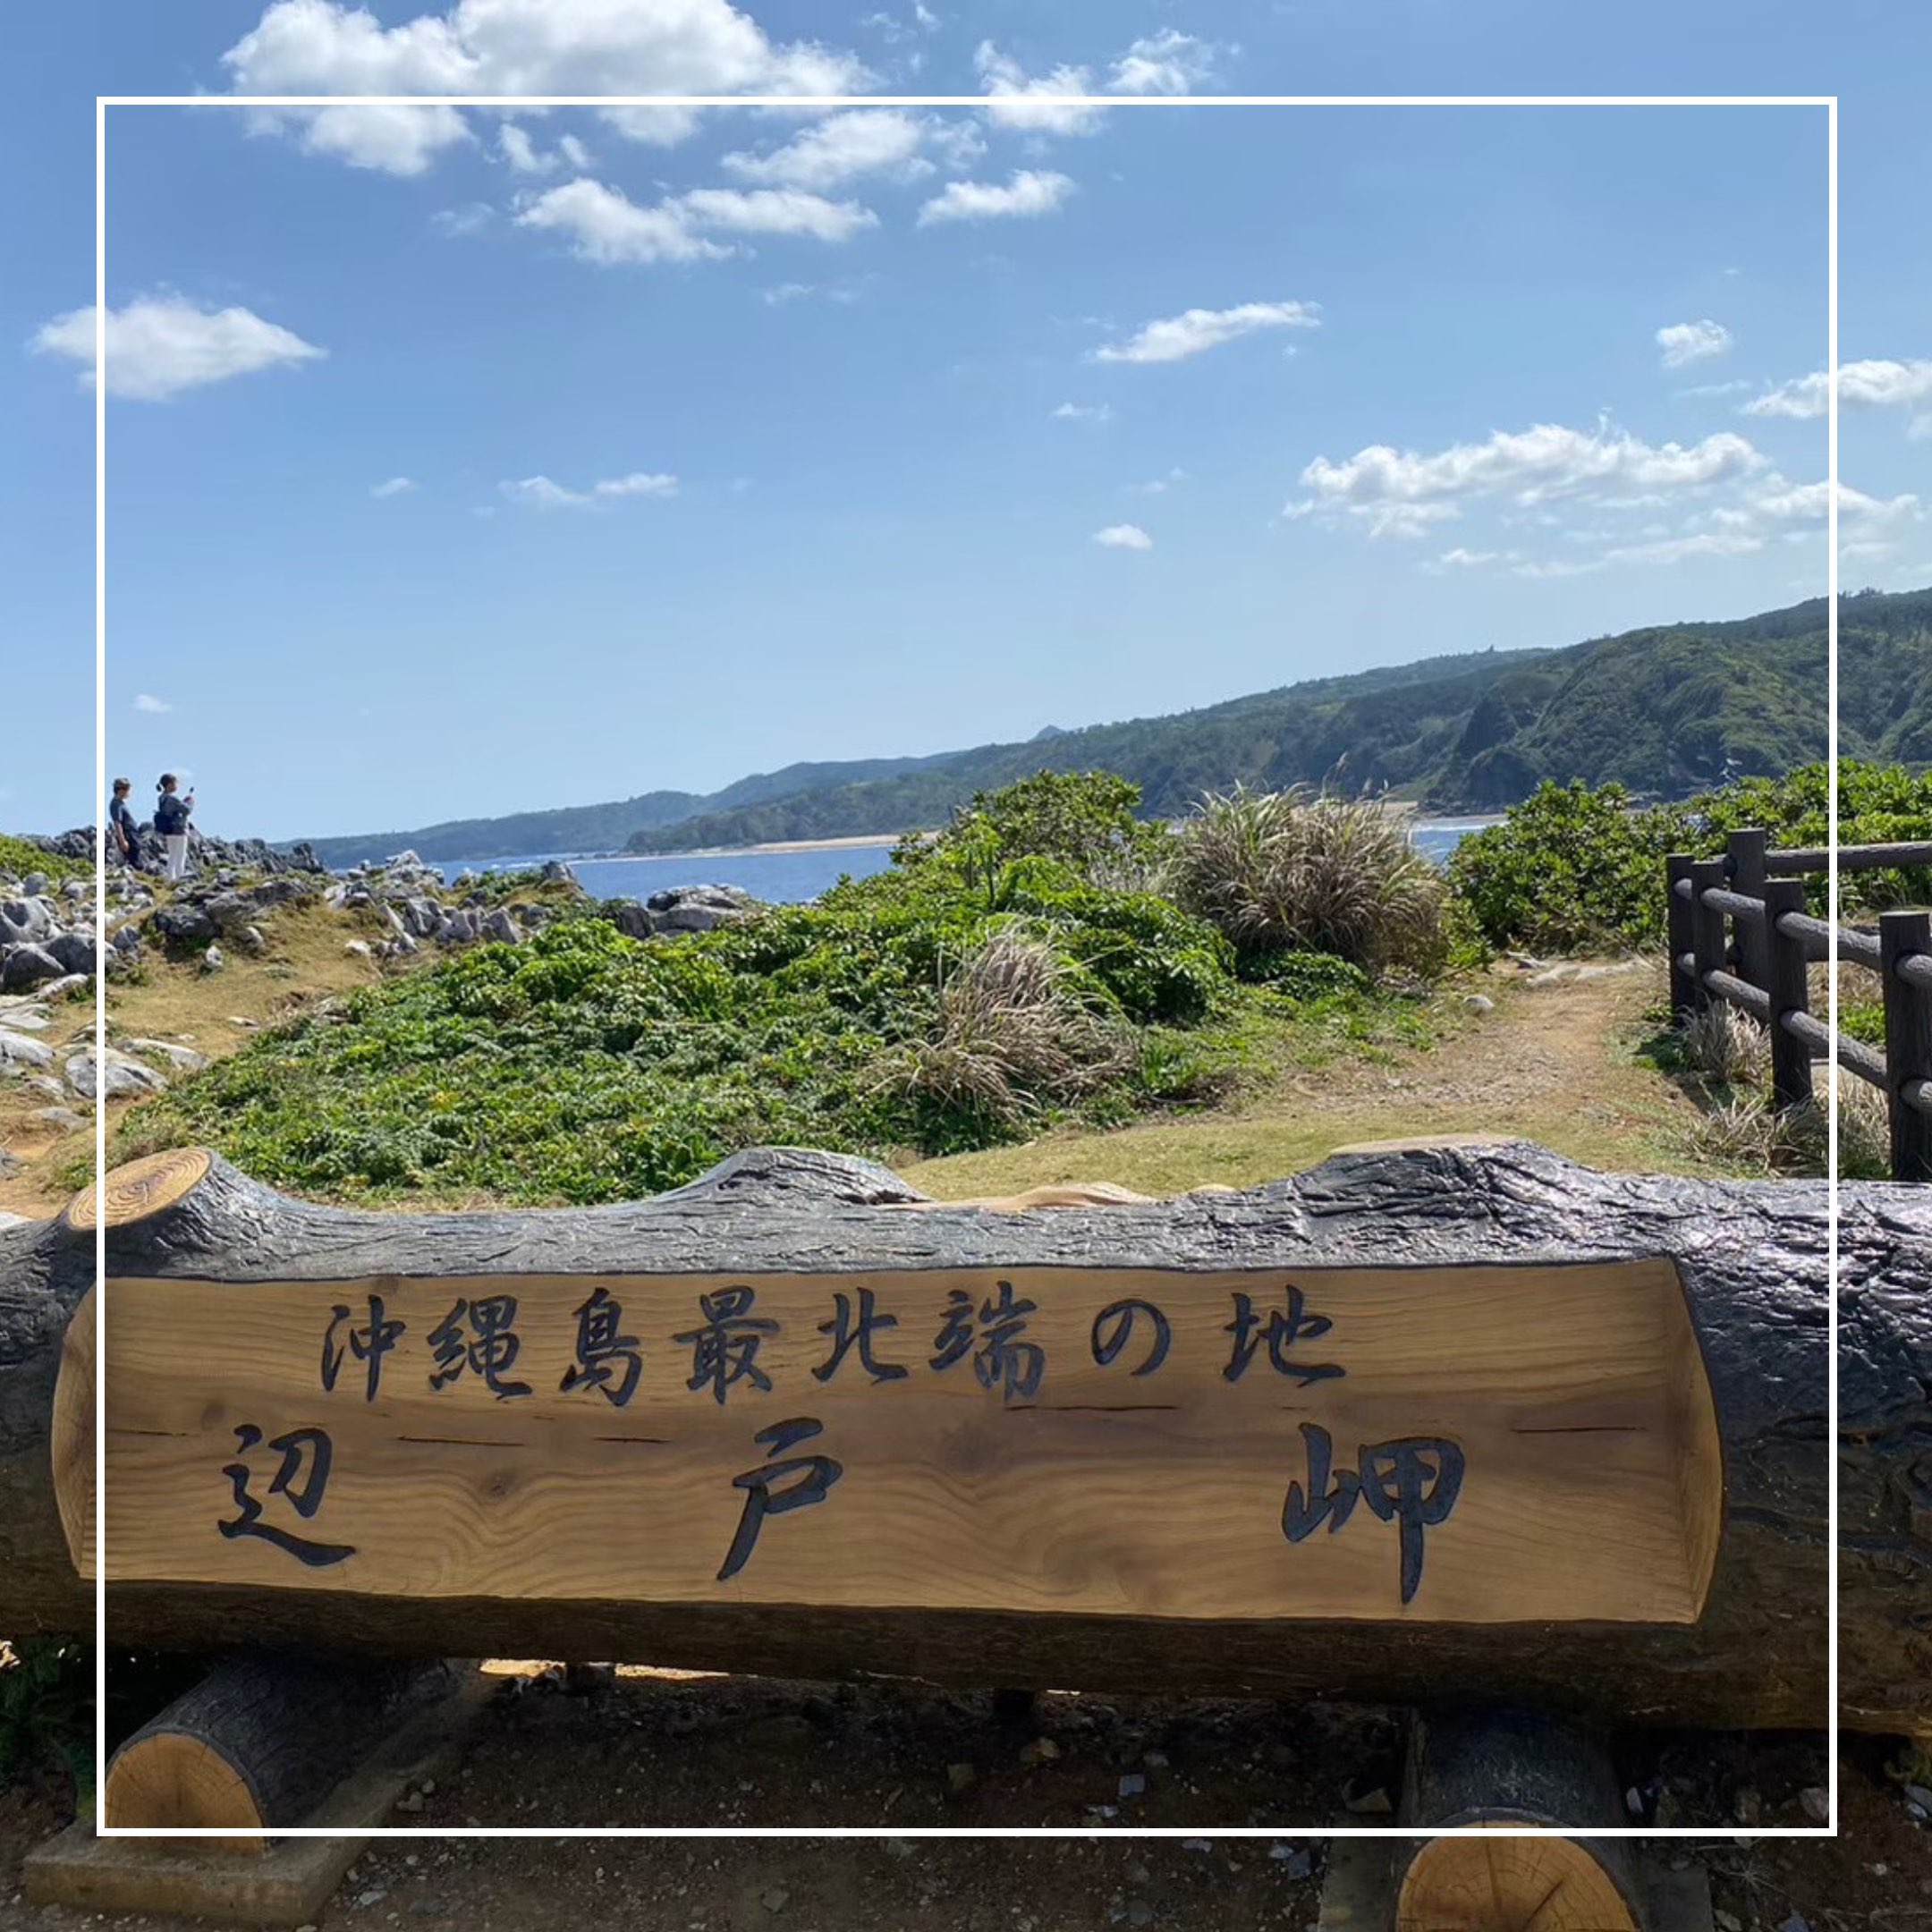 【冲绳县】冲绳本岛最北端的海角,是绝景全景的景点!